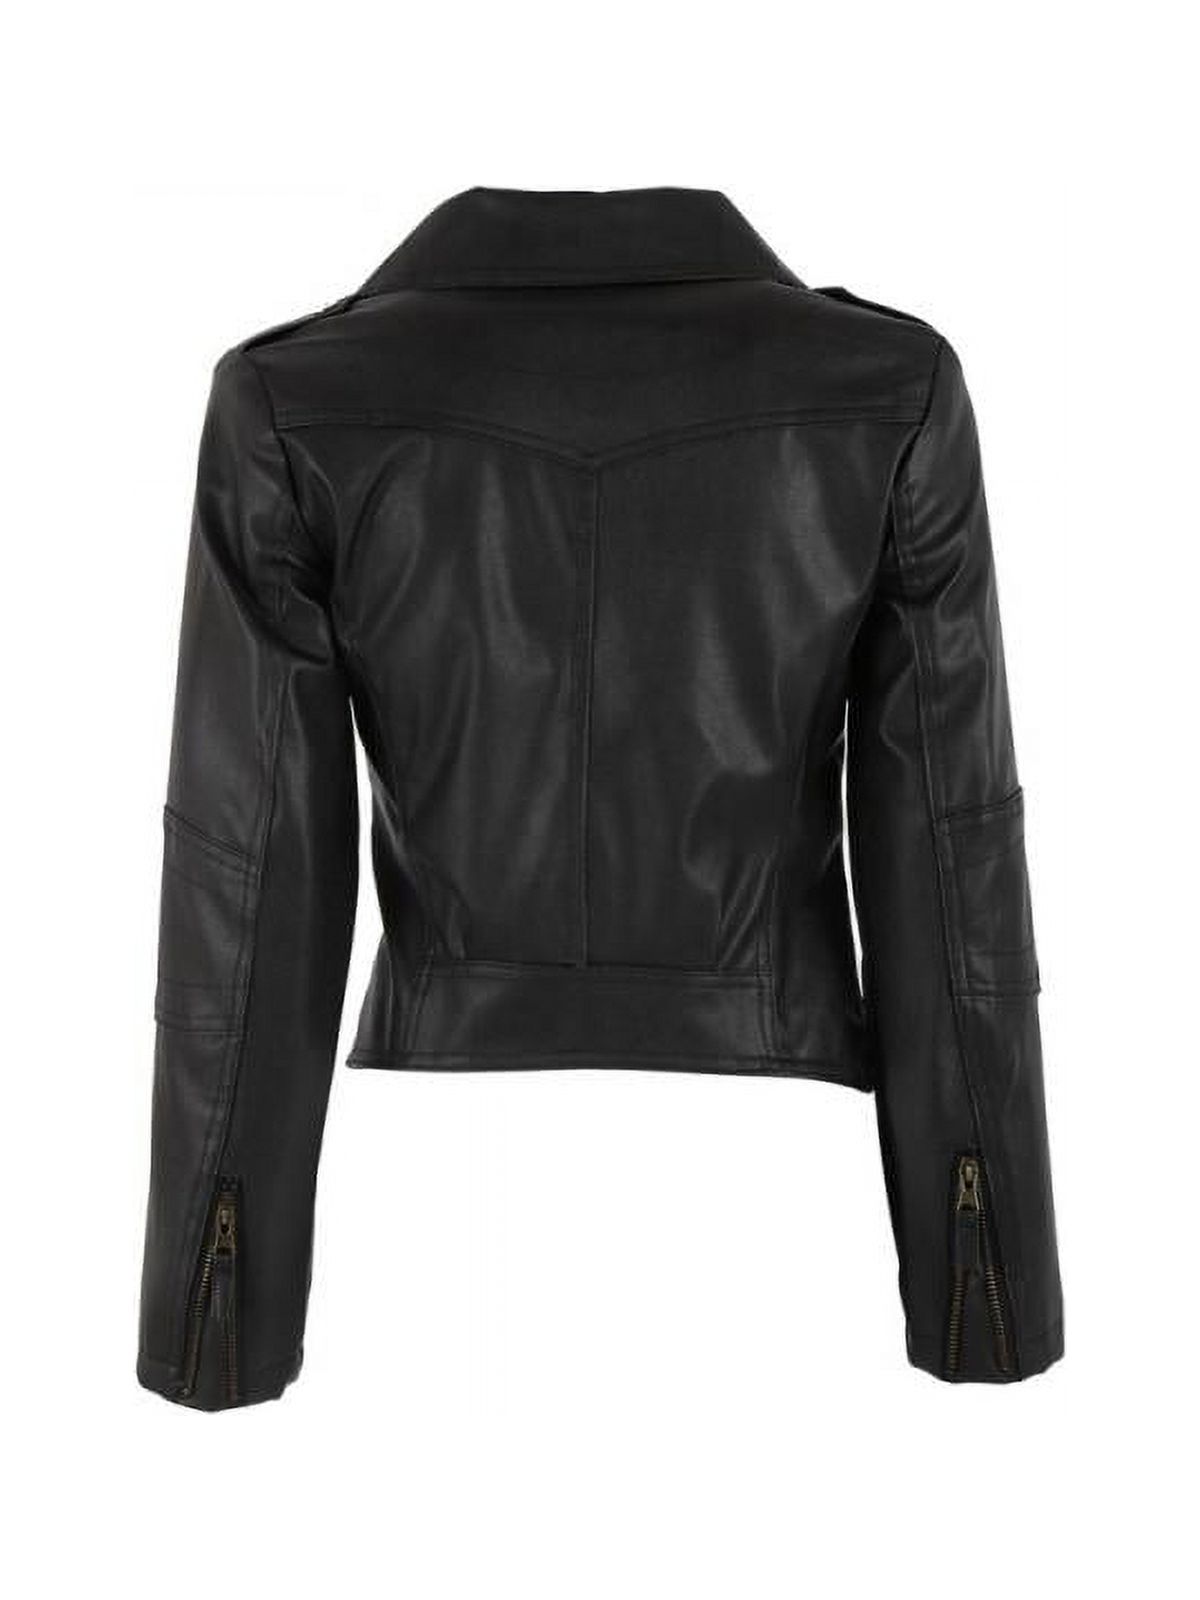 Luxsea Fashion Women Leather Motorcycle Zipper Punk Coat Biker Jacket Lady Autumn Winter Outwear - image 2 of 6